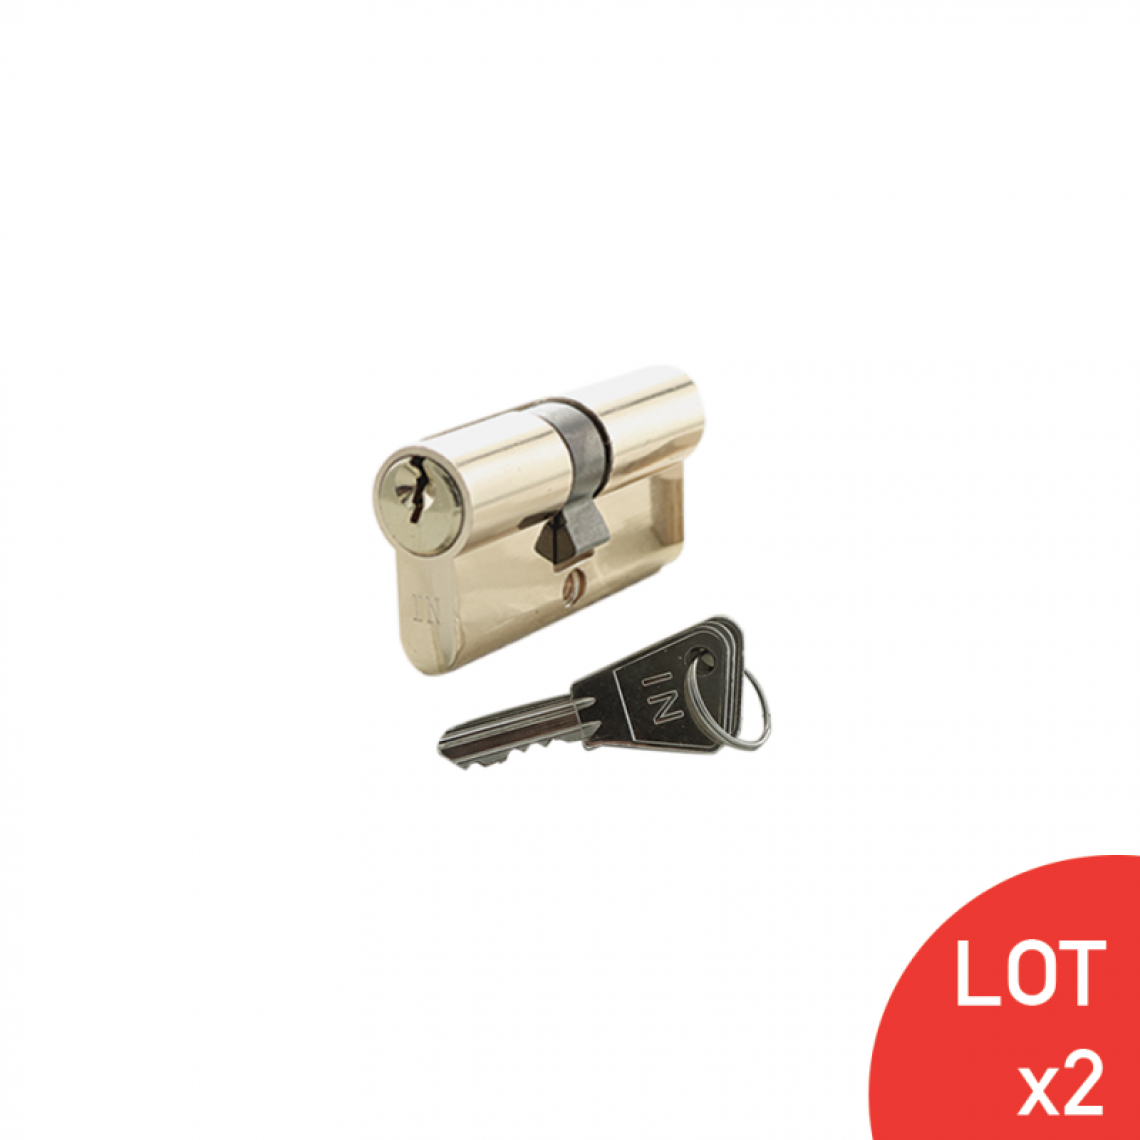 Secury-T - Cylindre de 80mm (35x45) varié laiton poli 3 clés laiton nickelé x2 - Cylindre de porte